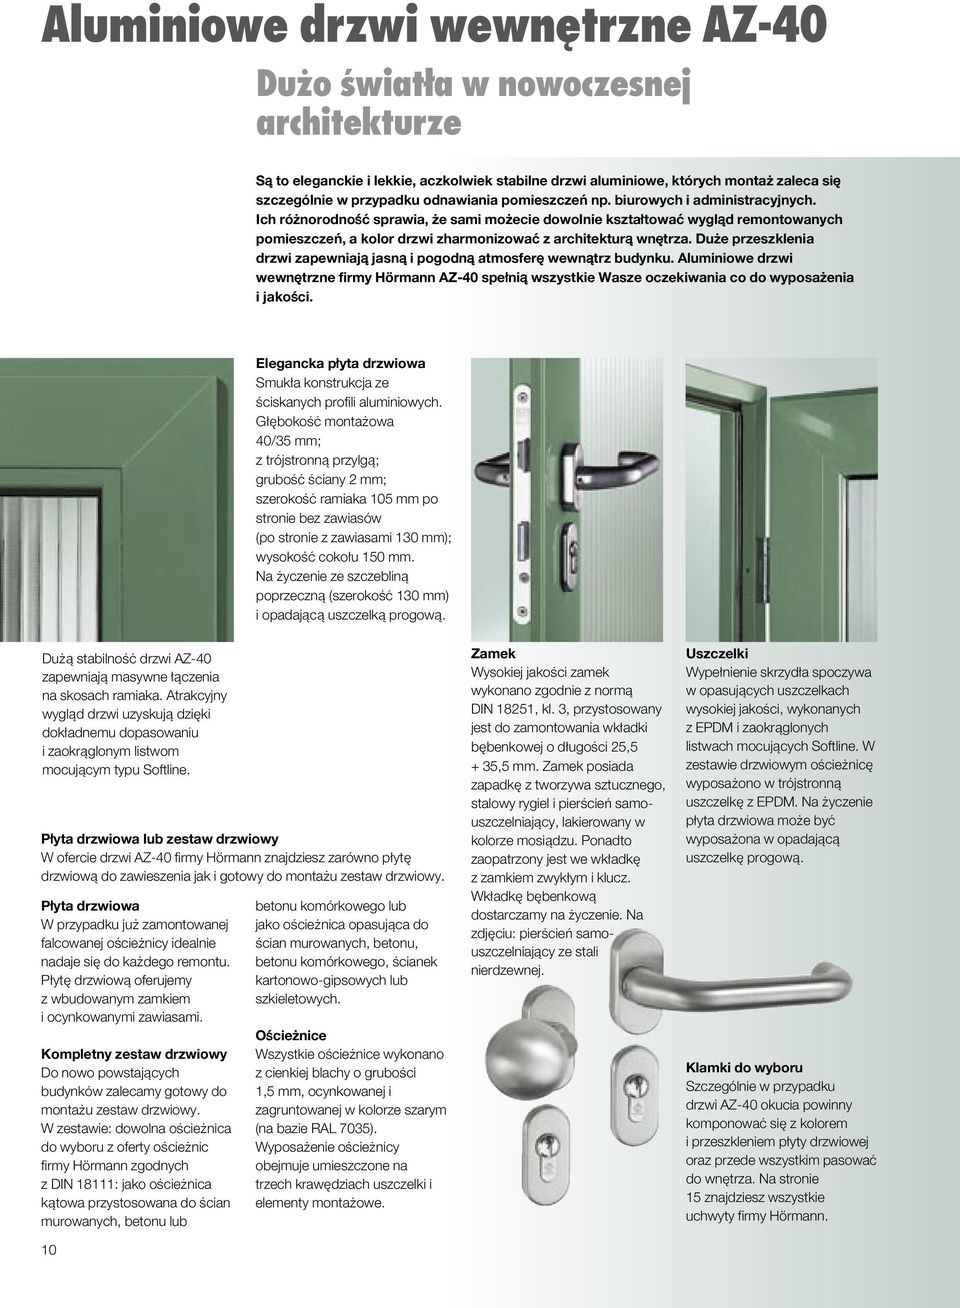 Du e przeszklenia drzwi zapewniajå jasnå i pogodnå atmosfer wewnåtrz budynku. Aluminiowe drzwi wewn trzne firmy Hörmann AZ-40 spe niå wszystkie Wasze oczekiwania co do wyposa enia i jako ci.